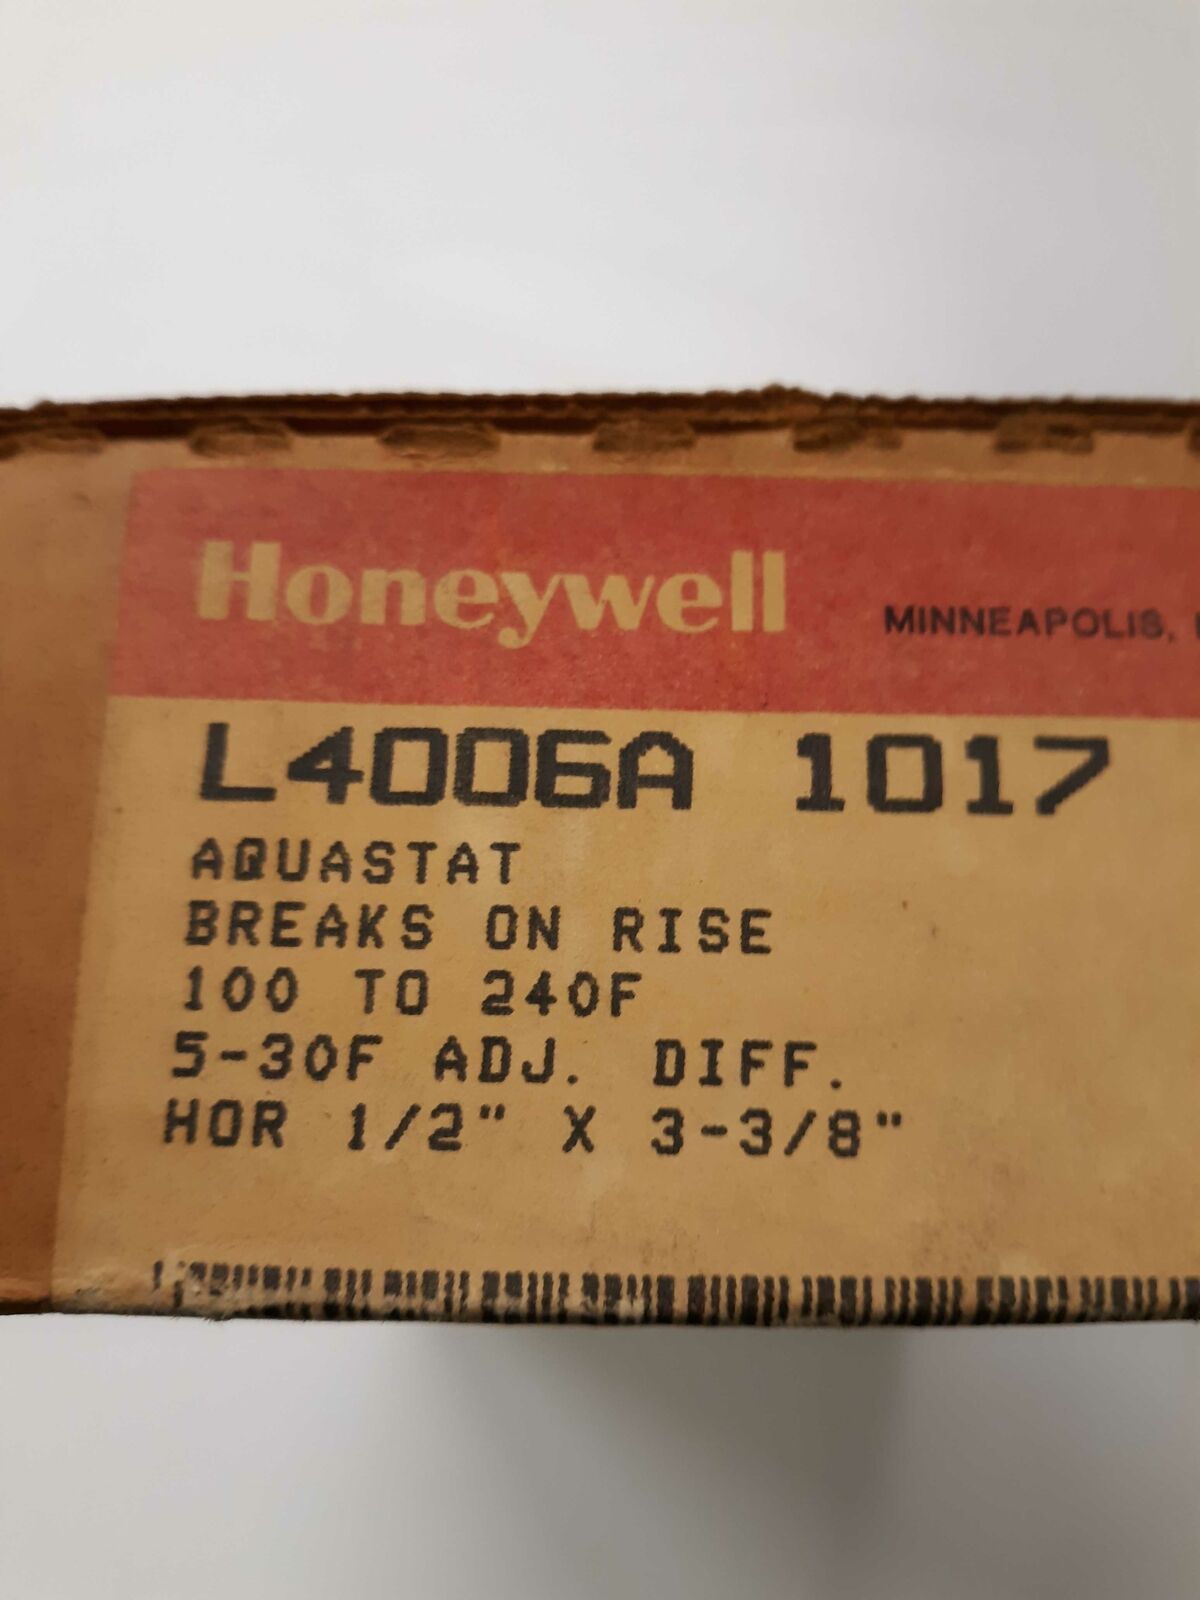 Honeywell L4006A1017 Aquastat breaks on rise 100-240F range 5-30F adj diff.